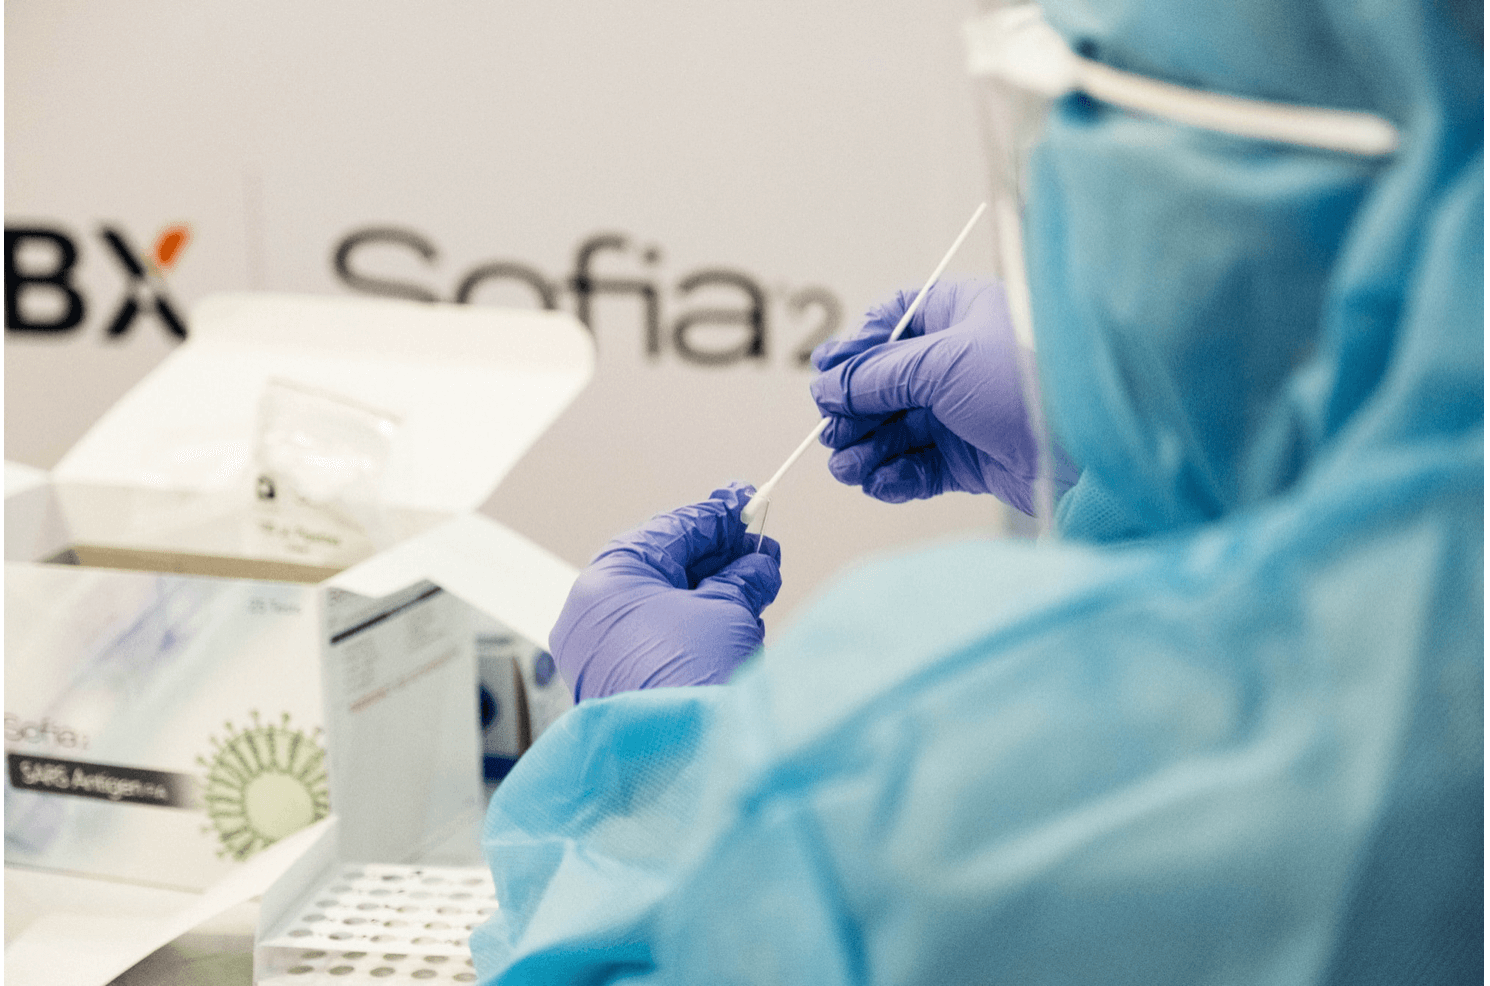 Teste de coronavírus em Viena: confira onde fazer